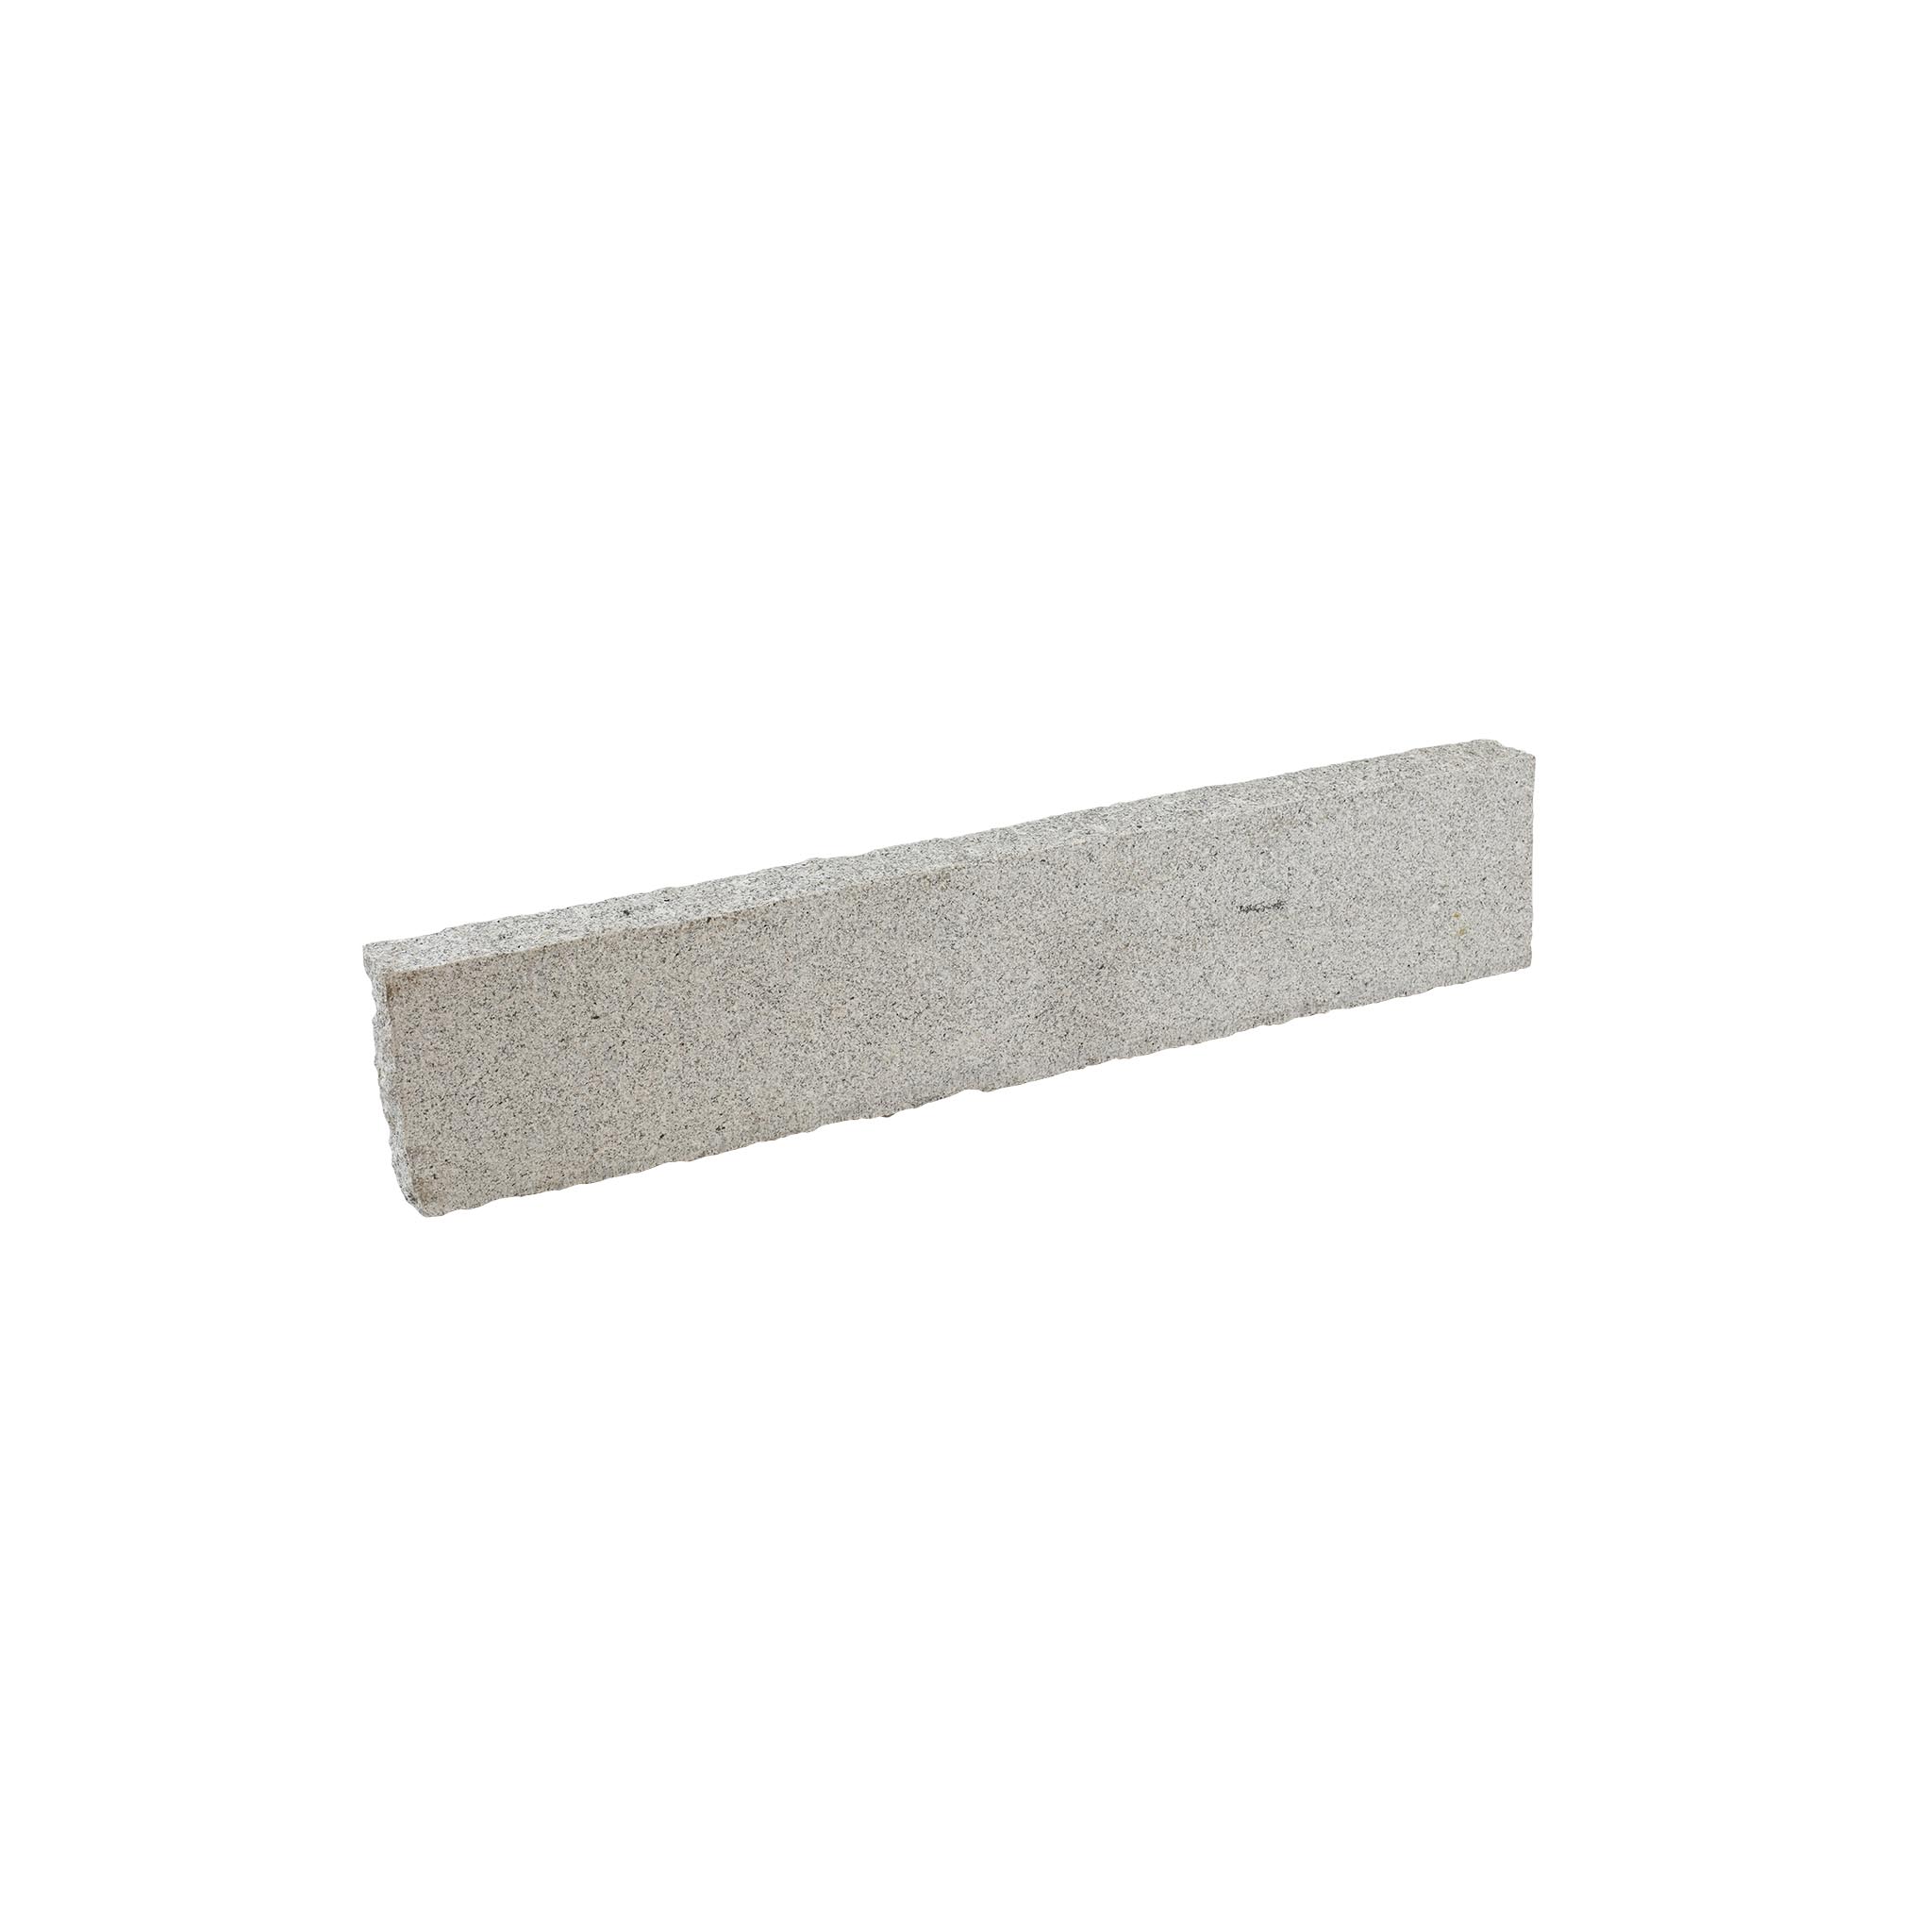 Kantenstein, Granit grau (Pina) Premium zweiseitig gesägt & gestockt, Granit Rasenkante Premium, 6 x 20 x 100 cm, grau, 